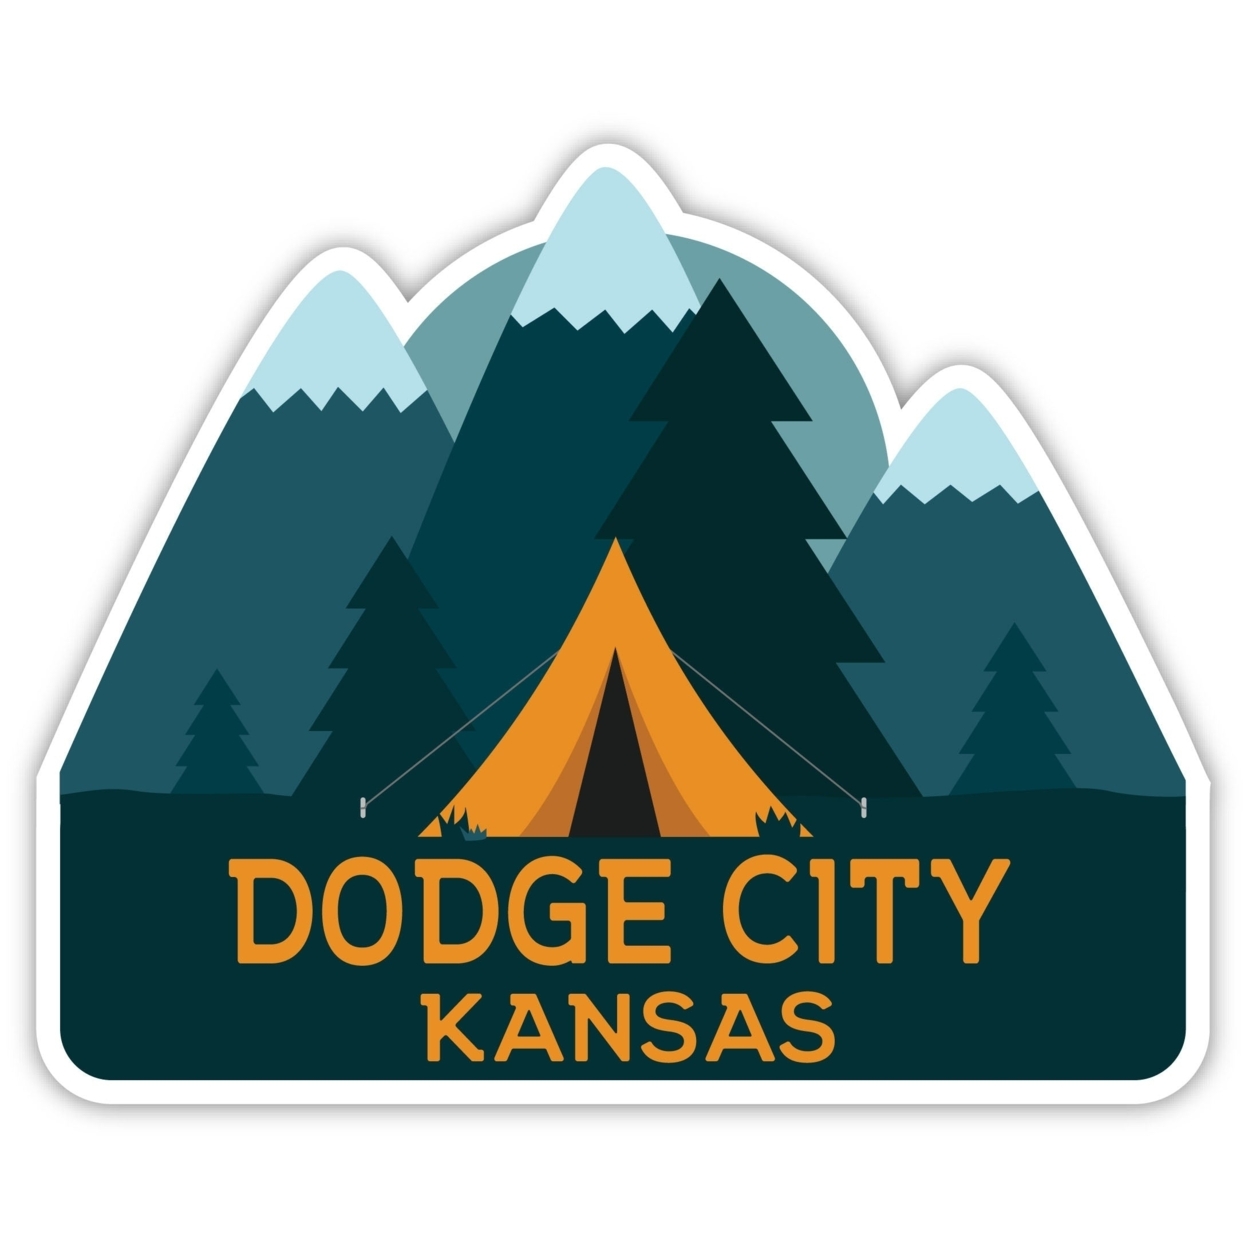 Dodge City Kansas Souvenir Decorative Stickers (Choose Theme And Size) - Single Unit, 4-Inch, Tent